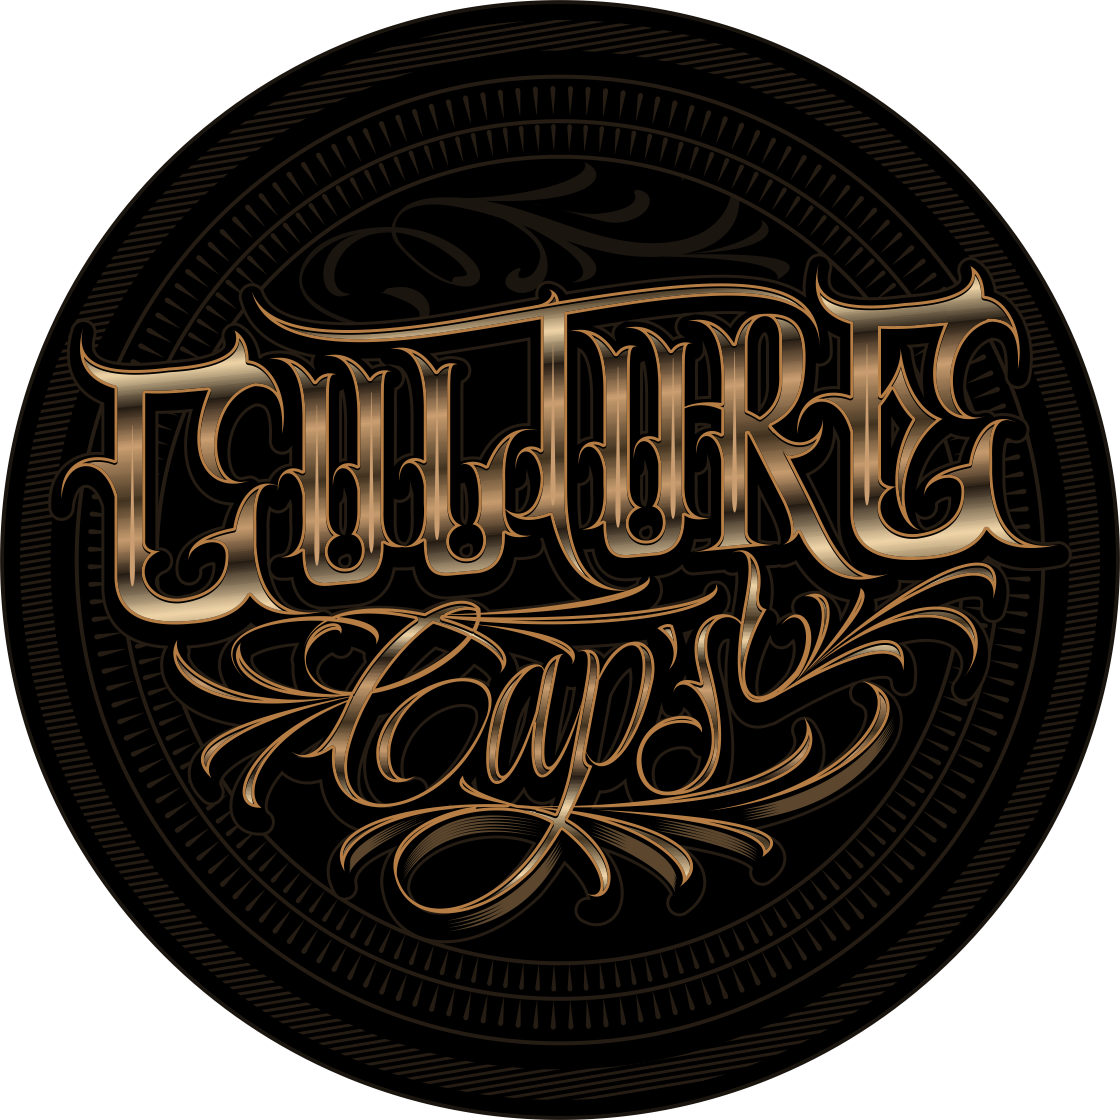 CULTURE CAPS – Culturecapscl